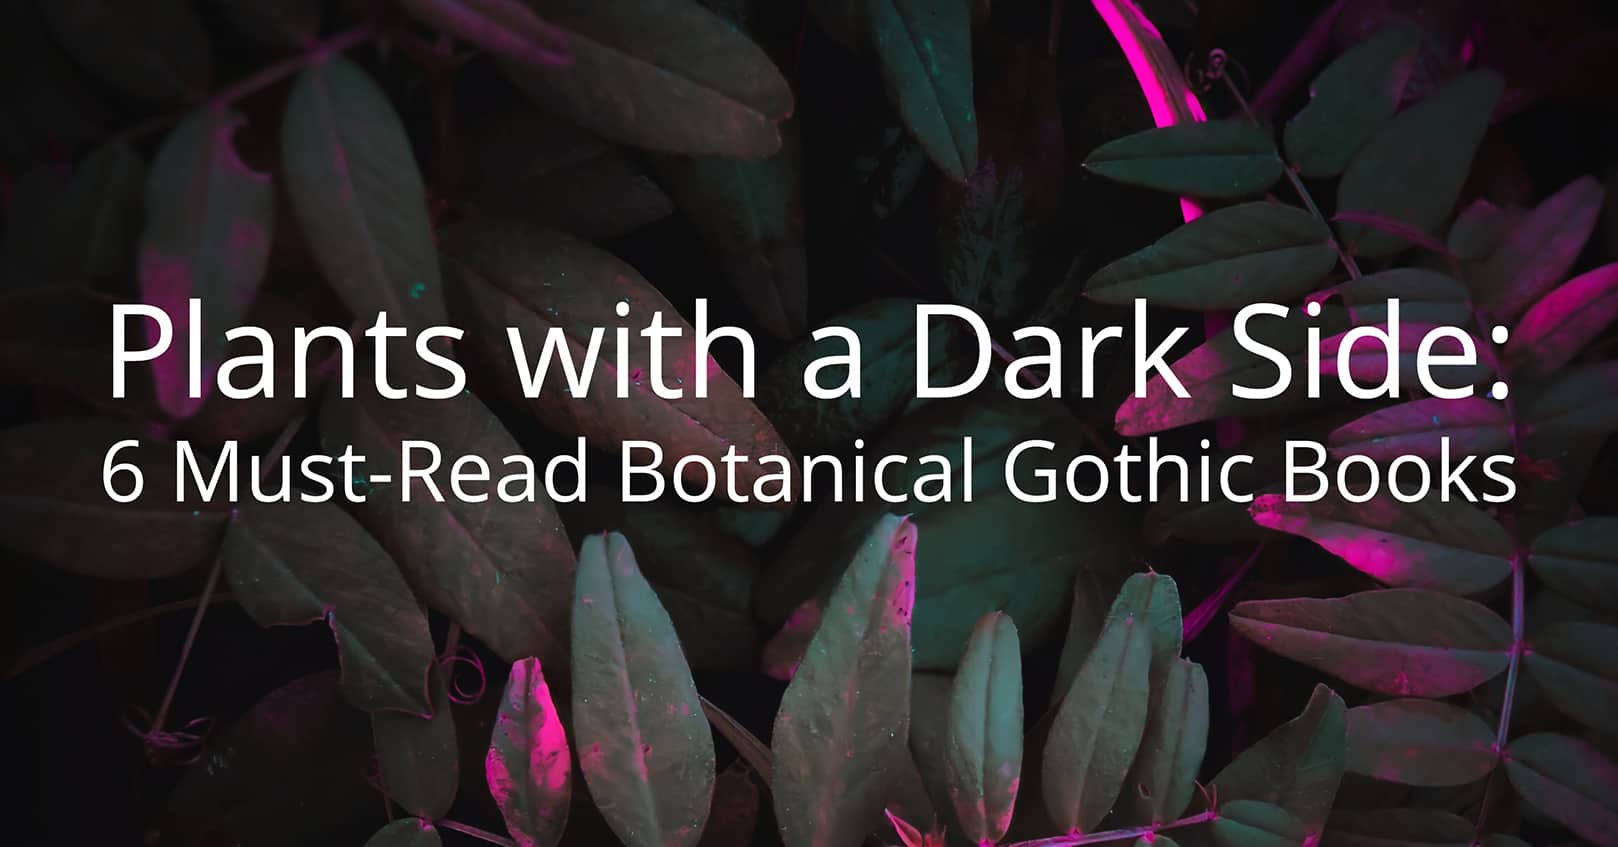 Botanical Gothic Books